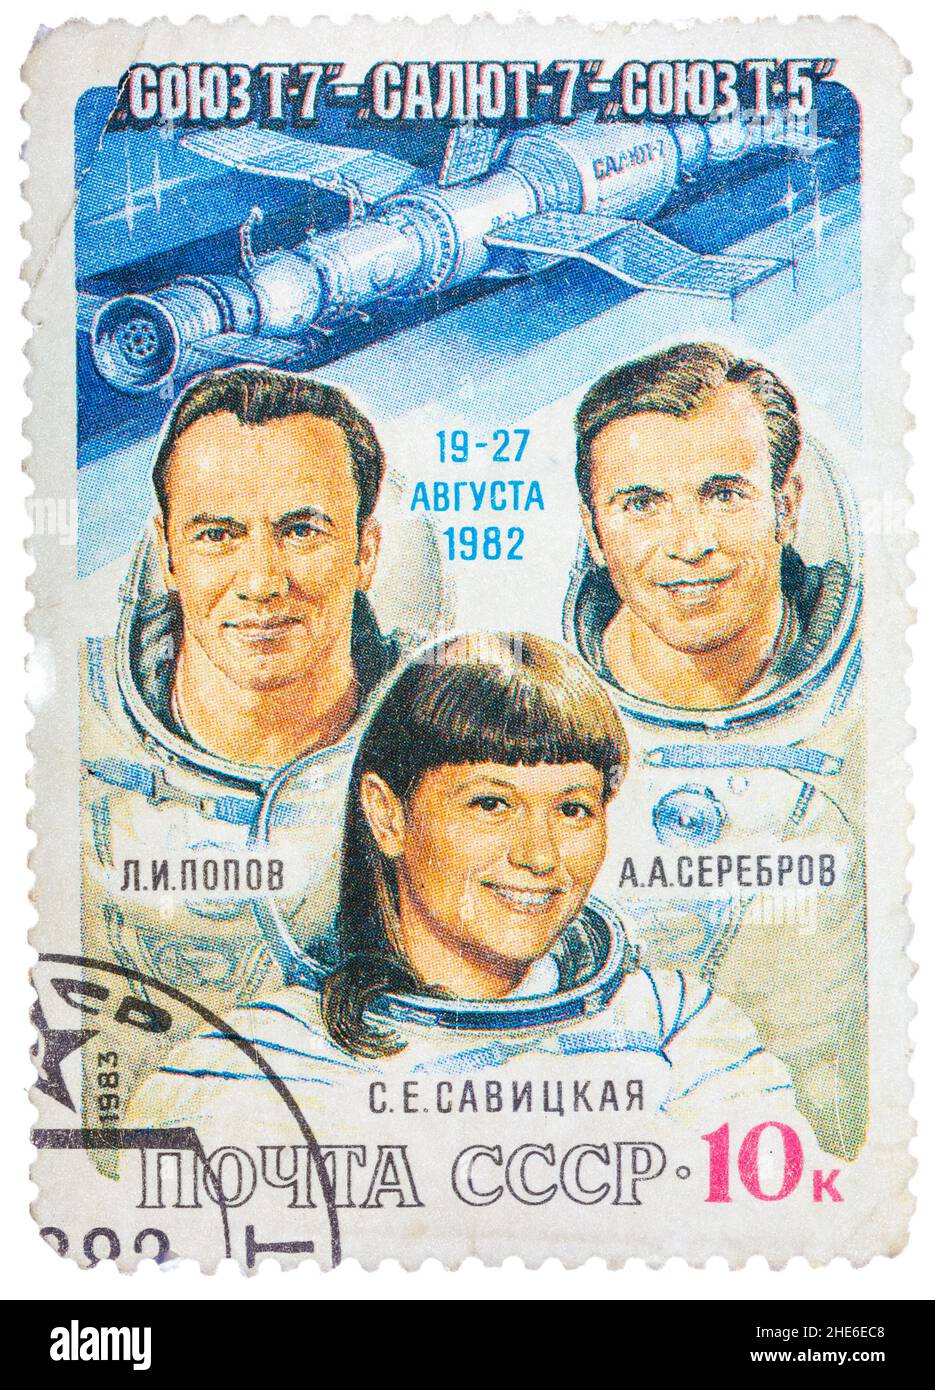 Poststempel gedruckt in der UdSSR (Russland), zeigt die Astronauten Popov, Serebrov und Savitskaya mit Inschriften und Namen der Serie 'Sojus T-7, Saljut 7, Sojus Stockfoto